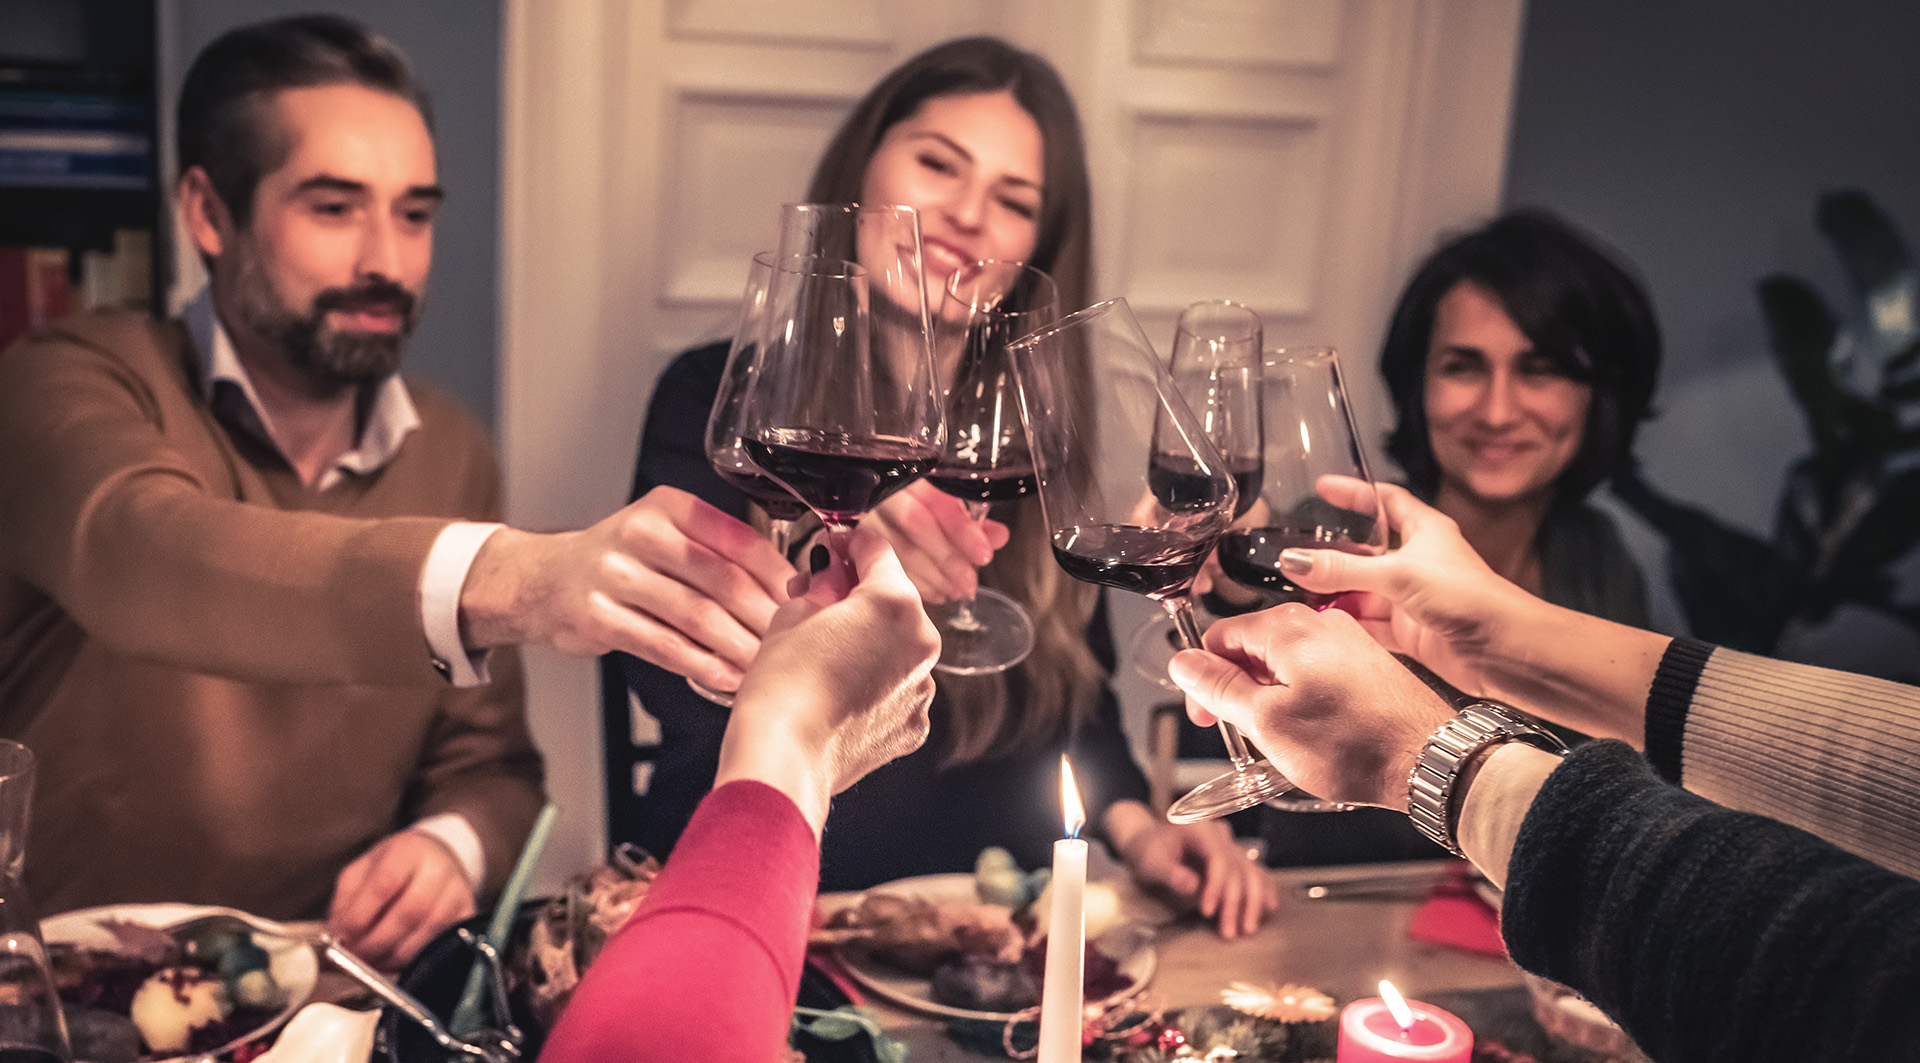 Adventszeit mit prämierten Weinen aus Spanien genießen